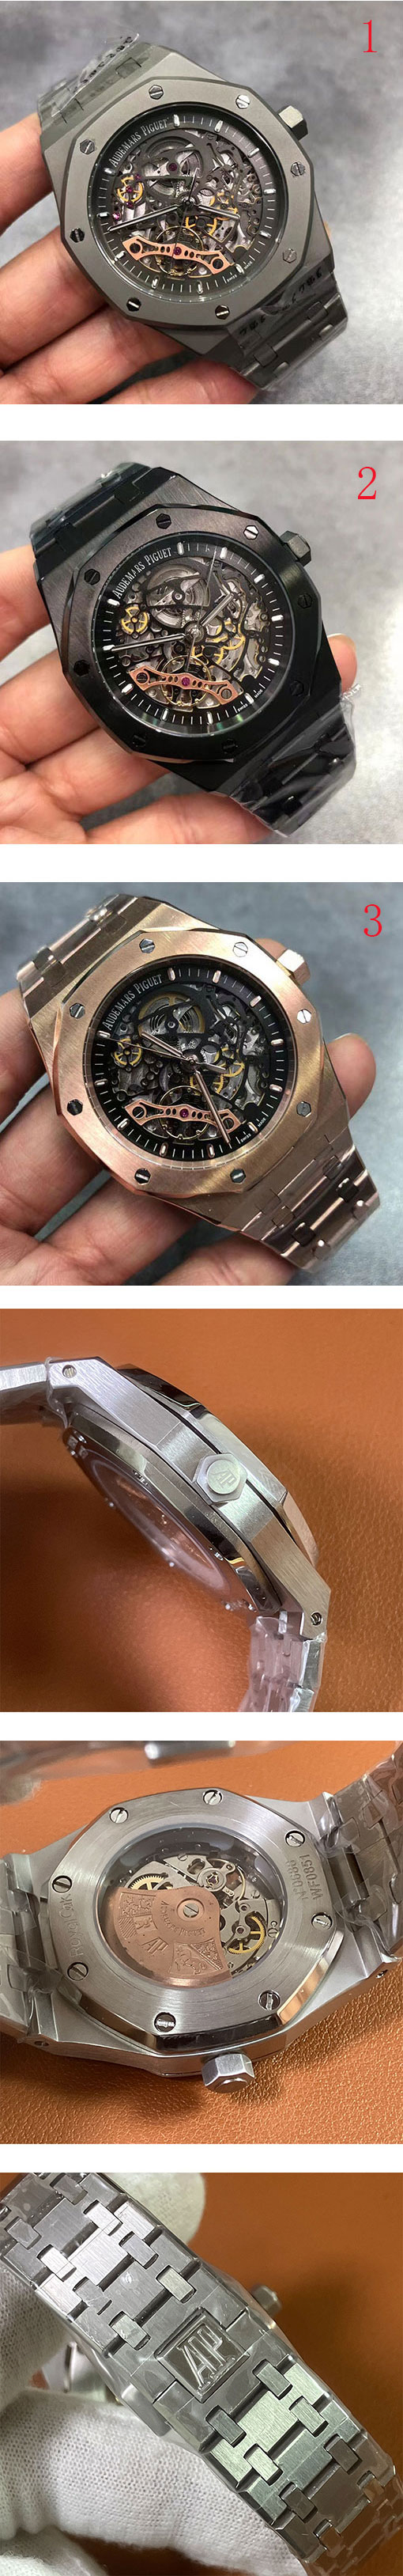 オーデマピゲコピー ロイヤルオーク ダブルバランスホイール 15407シリーズ時計 出来栄えがきれい